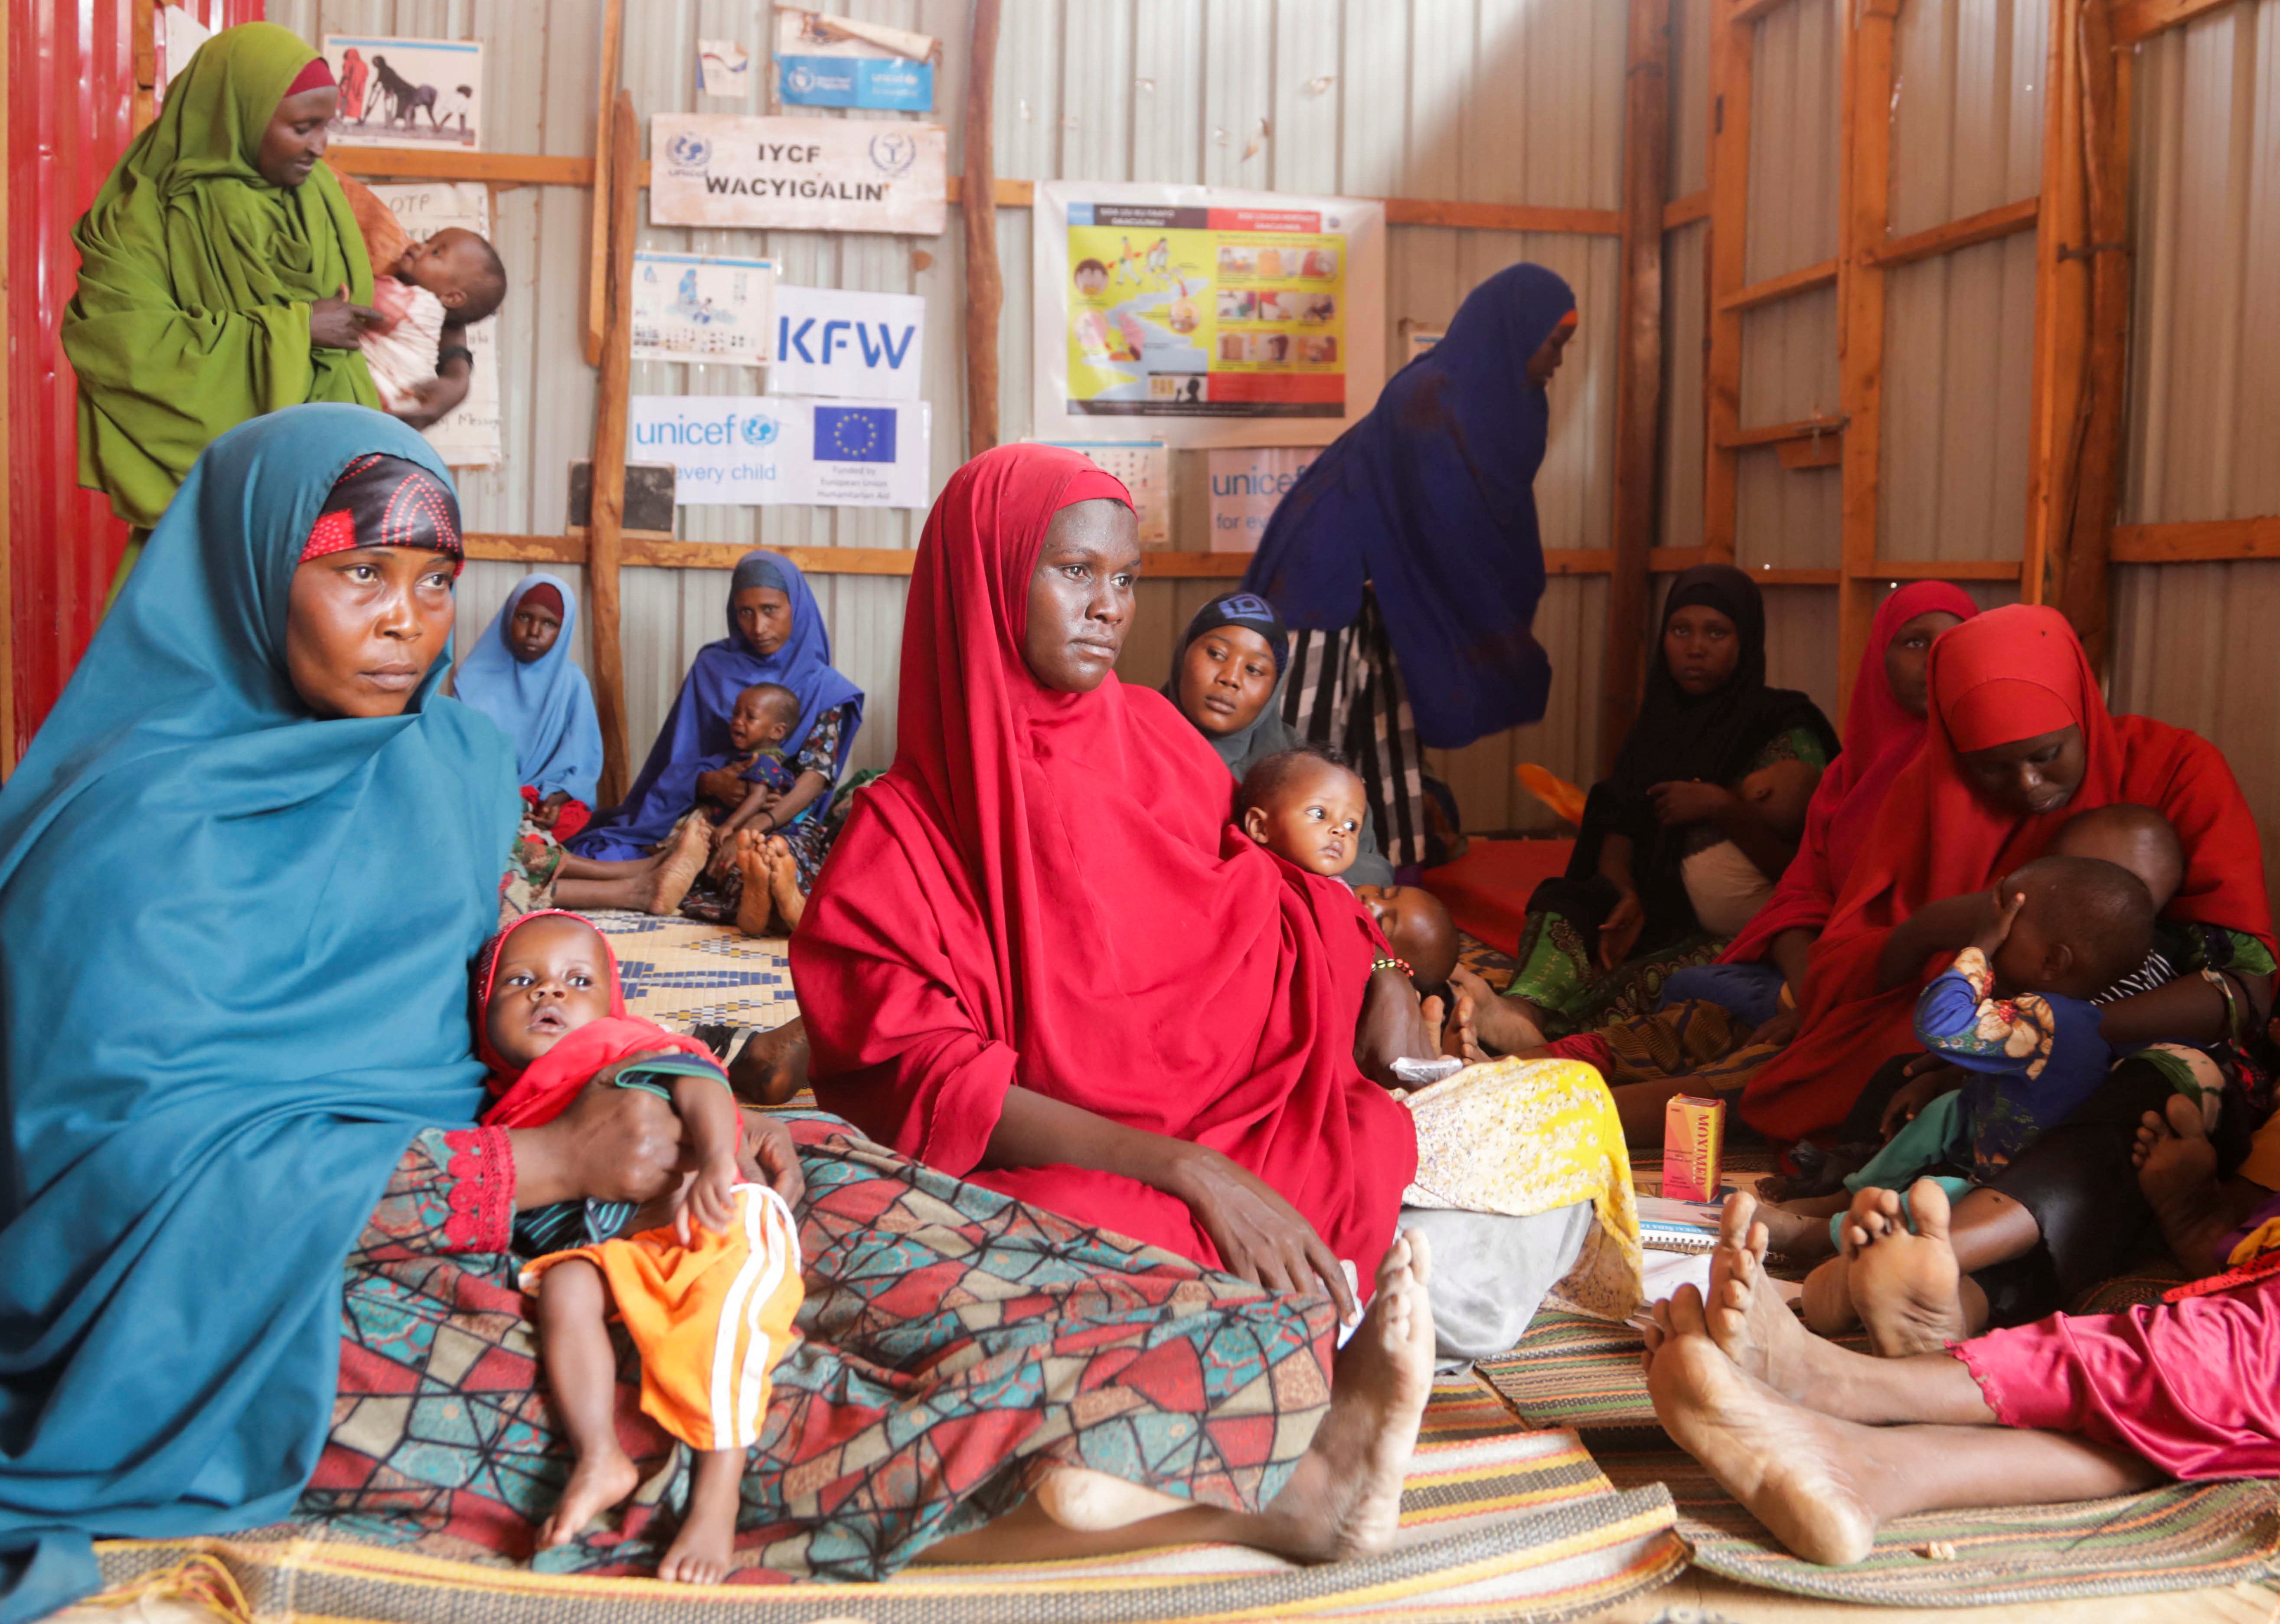 Mujeres somalíes desplazadas internamente llevan a sus hijos mientras esperan a que se les realice un examen de desnutrición en el hospital de Dollow, en la región de Gedo, Somalia. Las últimas semanas resultaron dramáticas para gran parte de la población somalí (Reuters)